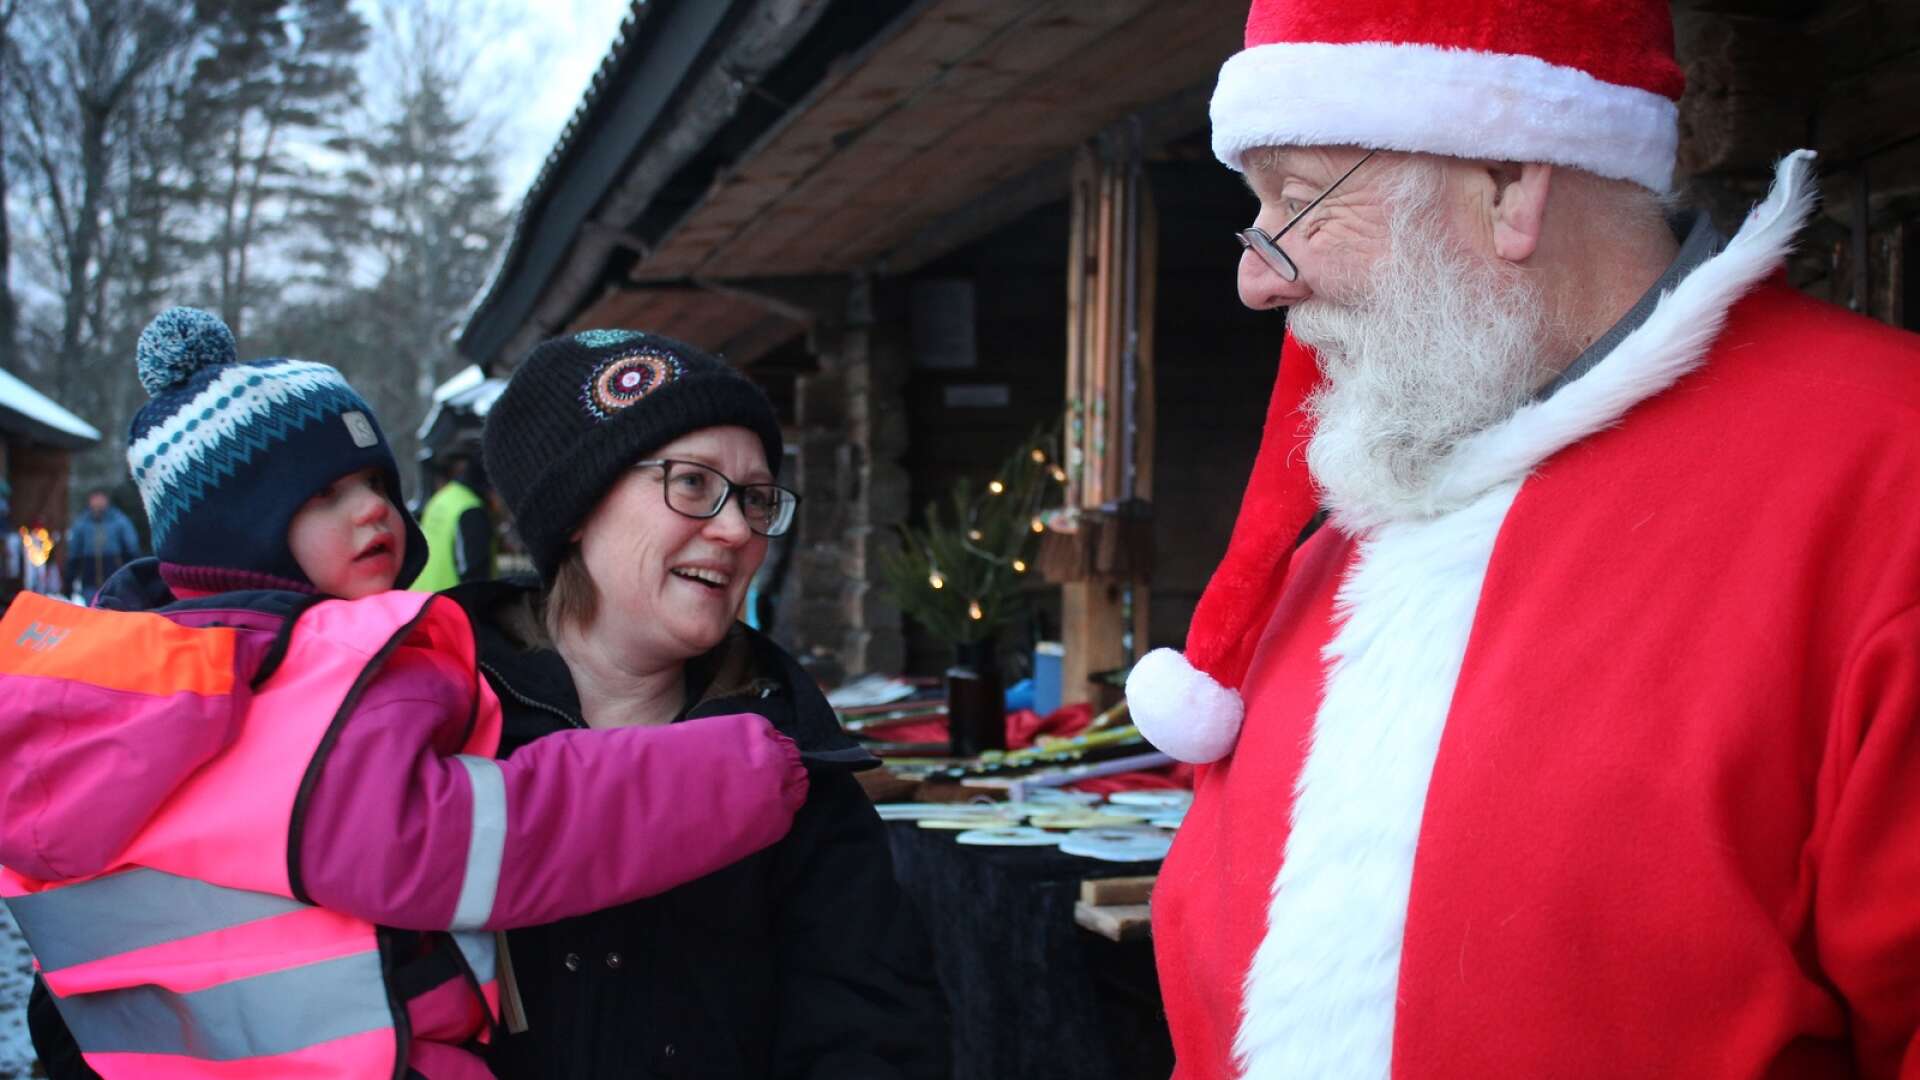 Tomten och tomtemor var på plats under dagen för att bland annat dela ut julklappar. Här syns flickan Saga, som blev både glad och kanske lite förvånad över att träffa tomten i Nysäter.